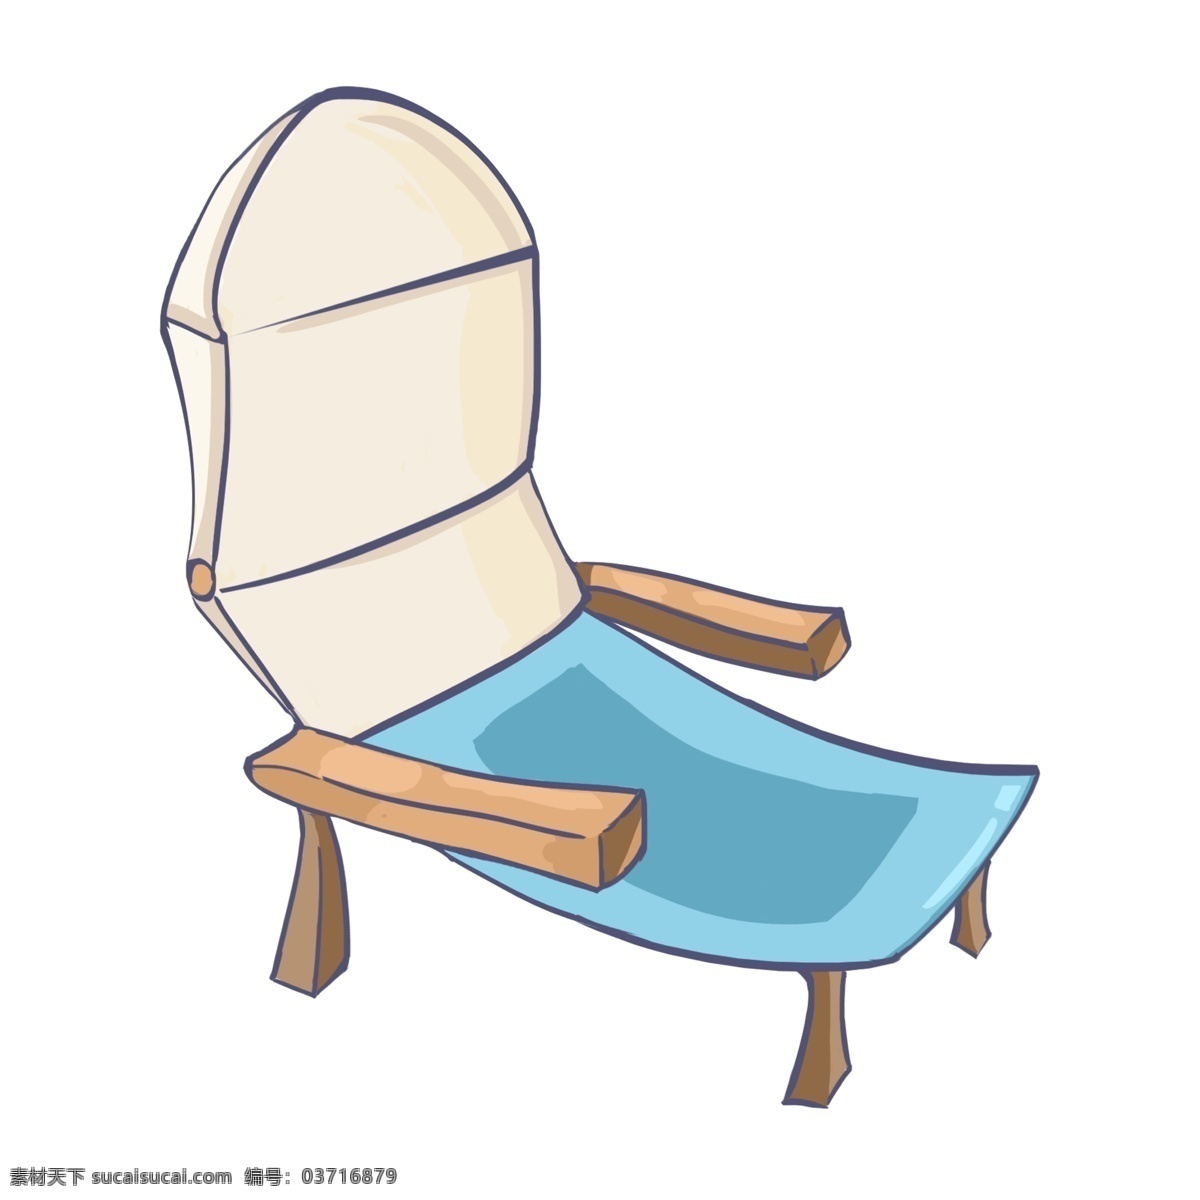 夏季舒适躺椅 躺椅 椅子 座椅